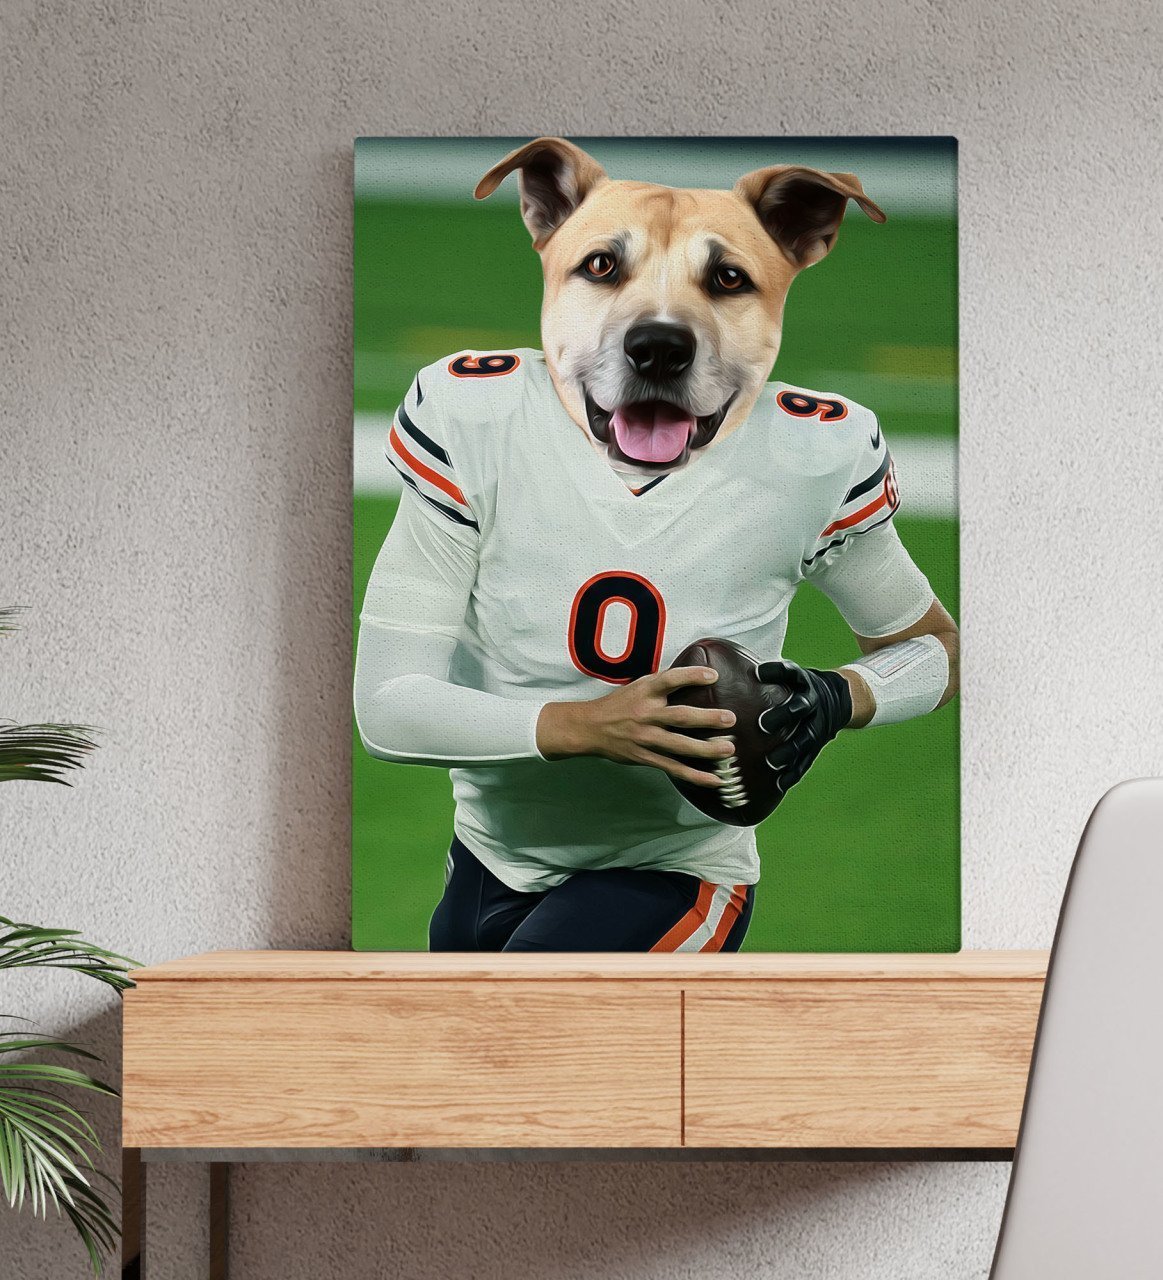 Evcil Dostlara Özel Amerikan Futbolcusu Tasarımlı Portre Kanvas Tablo 50x70cm-3